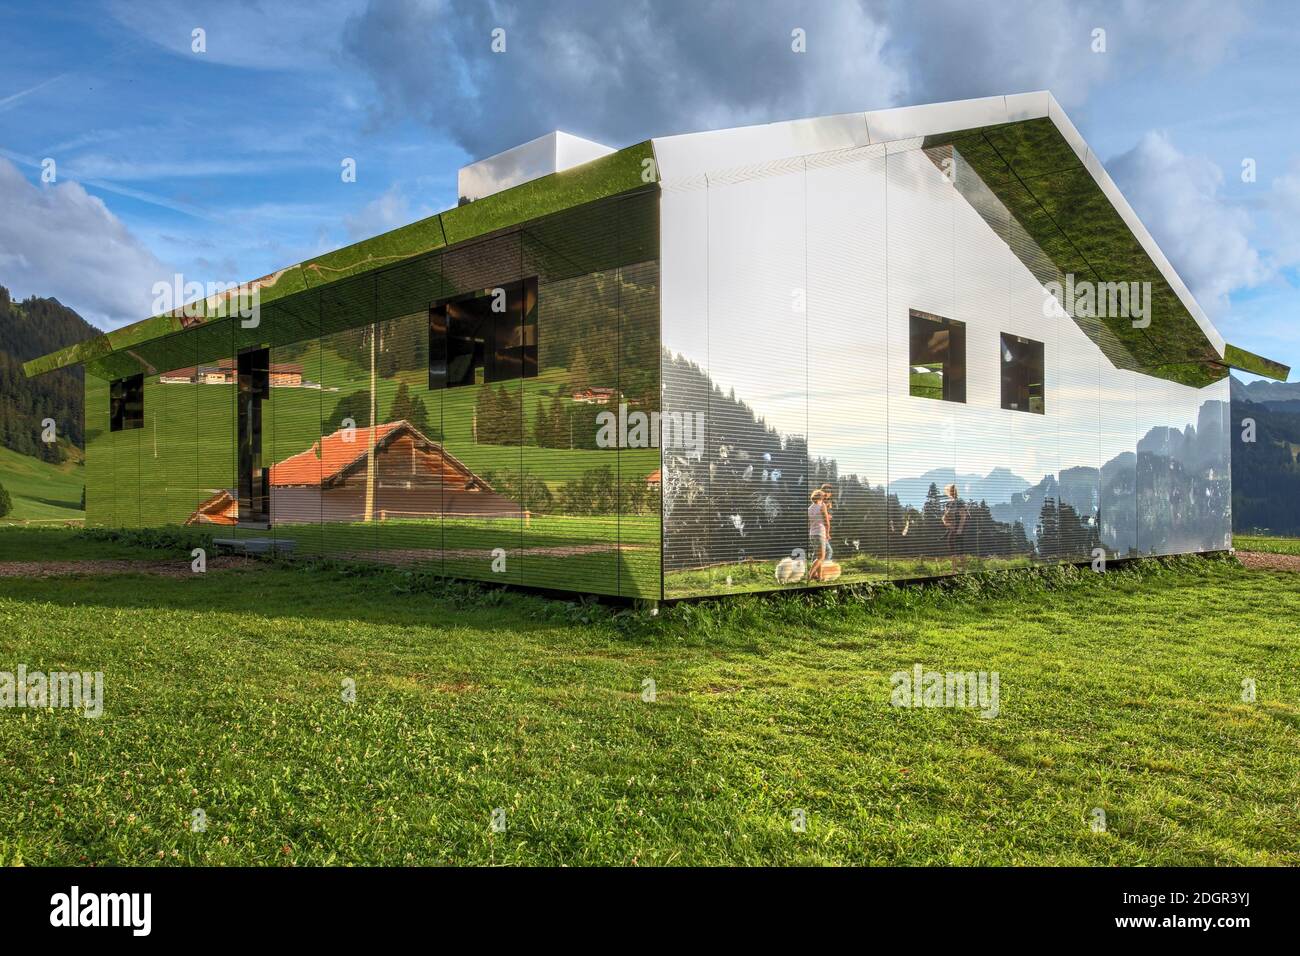 Gstaad, Suisse - 15 août 2020 - installation d'art temporaire par Doug Aitken, Mirage consiste en une maison de miroirs sur un sentier de randonnée entre Schön Banque D'Images